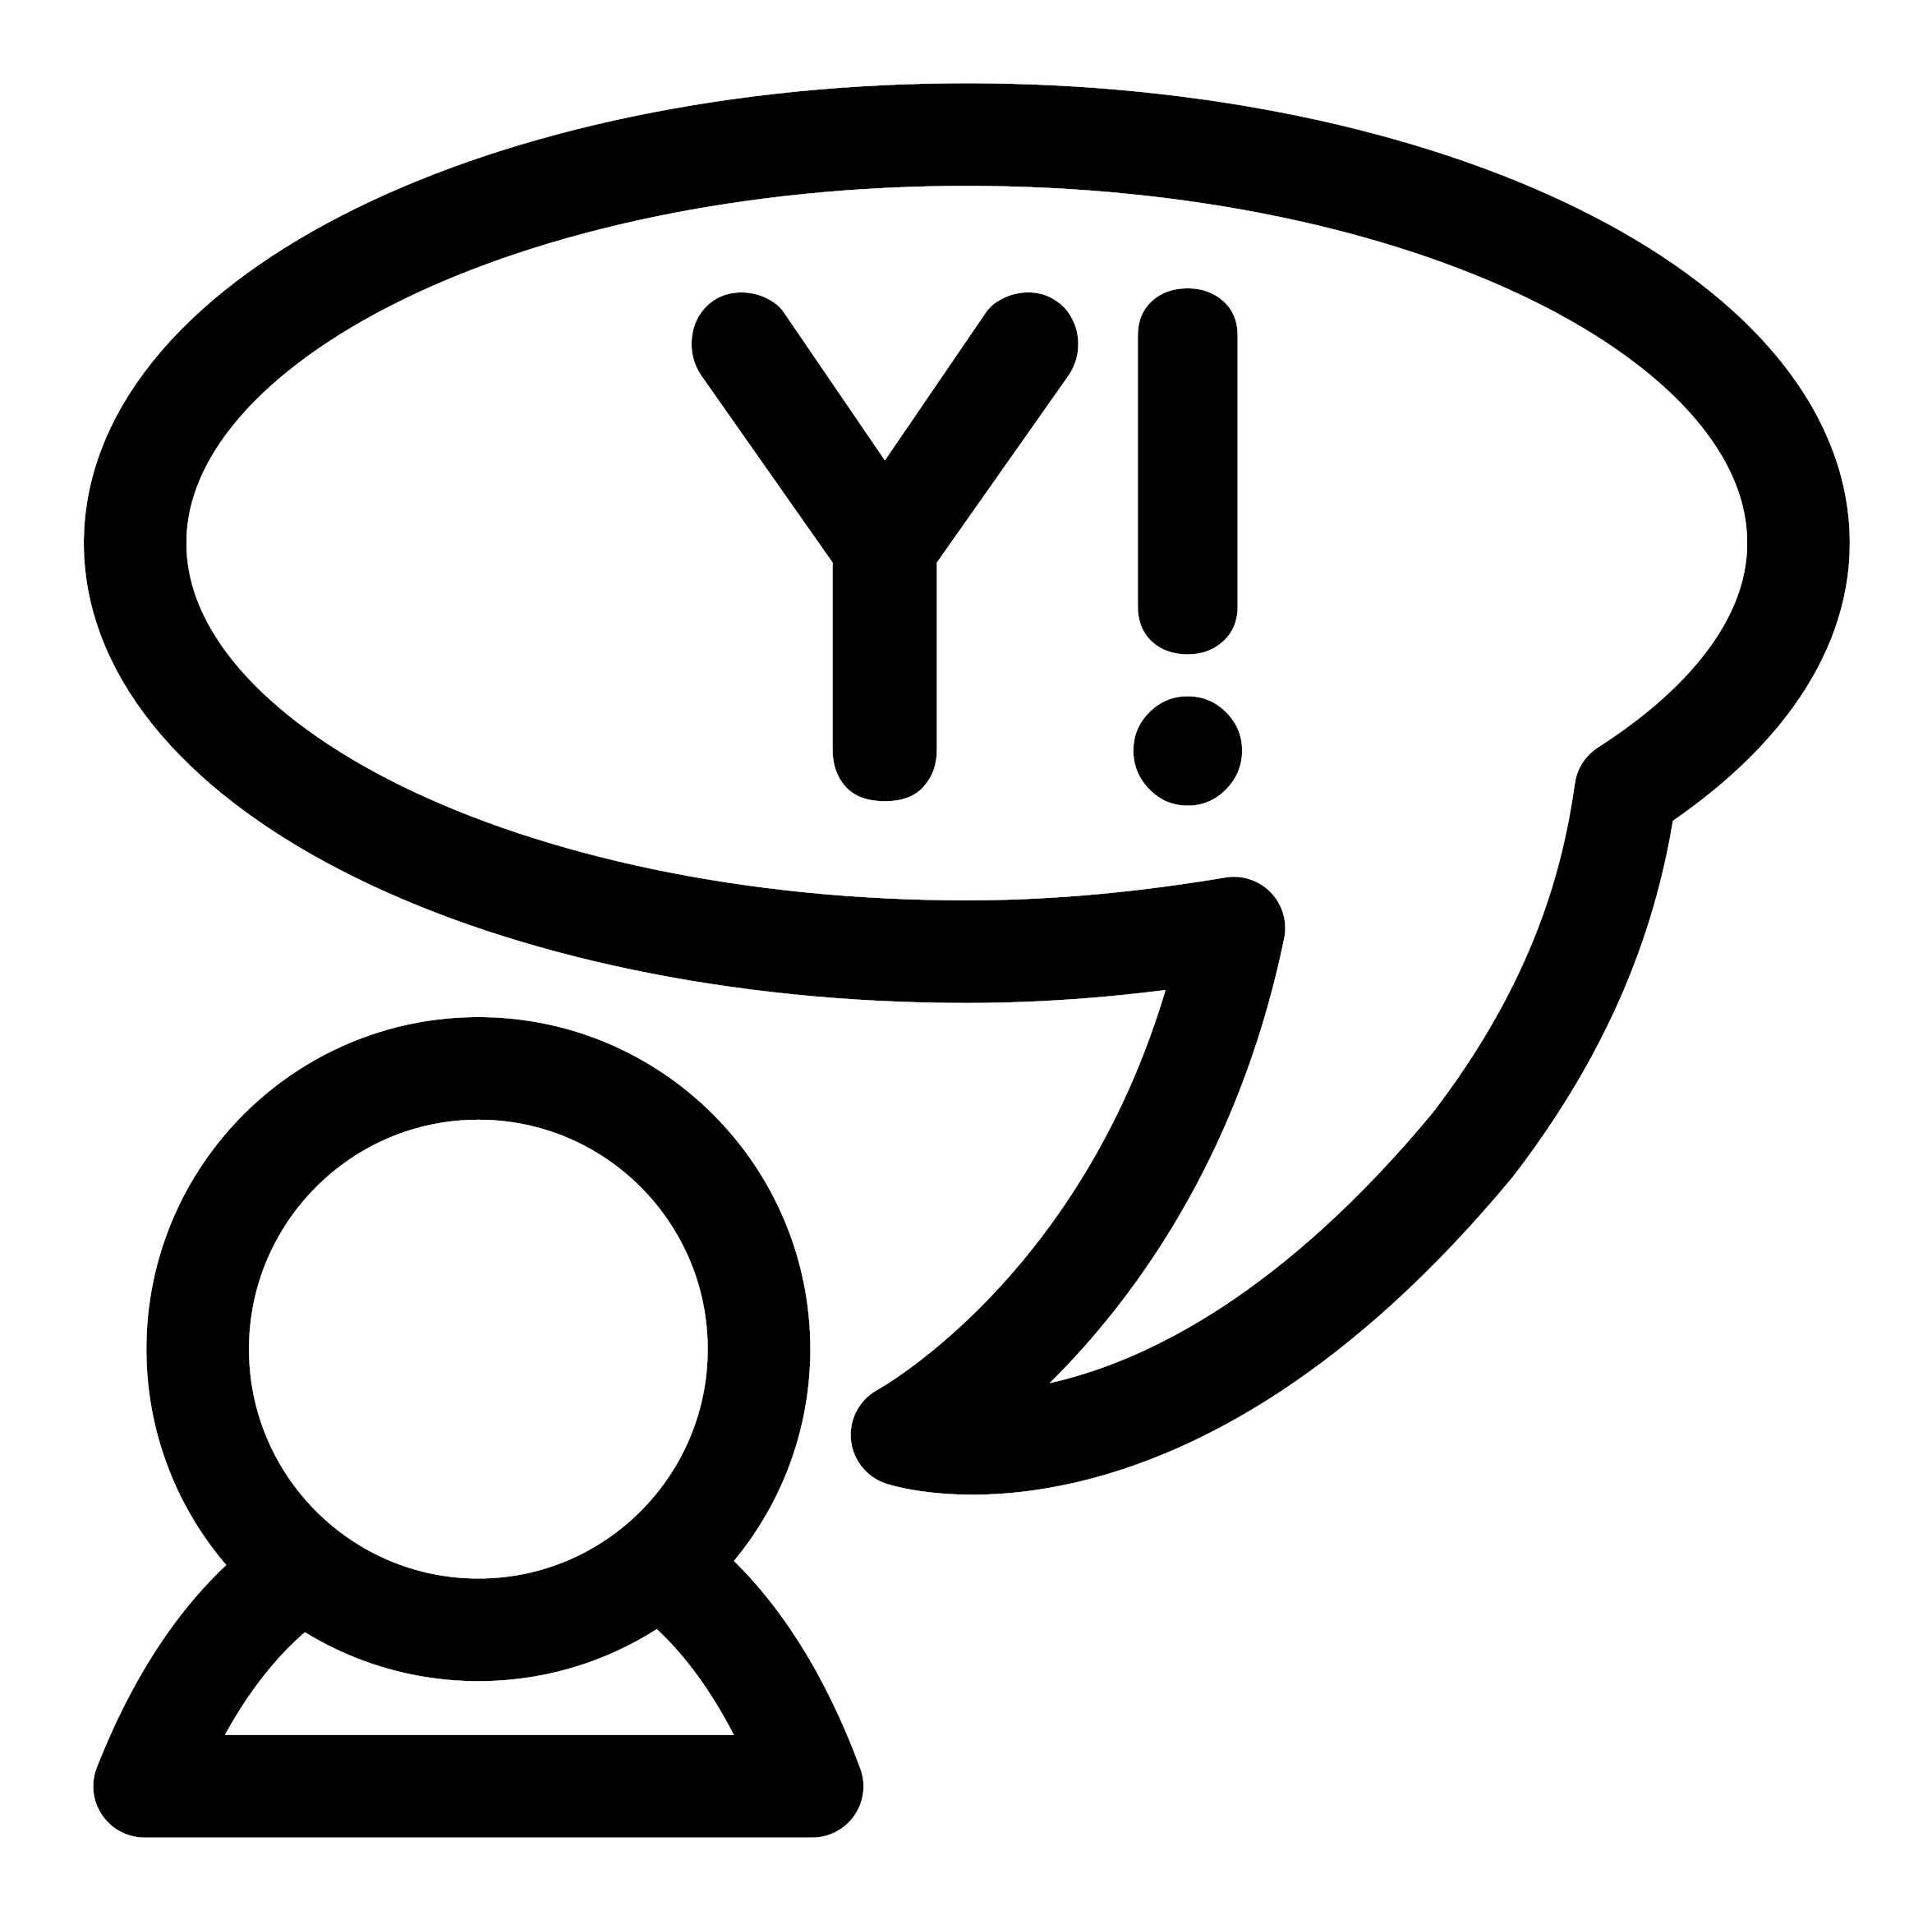 Big Image - Yahoo! Messenger Protocol (2400x2400)